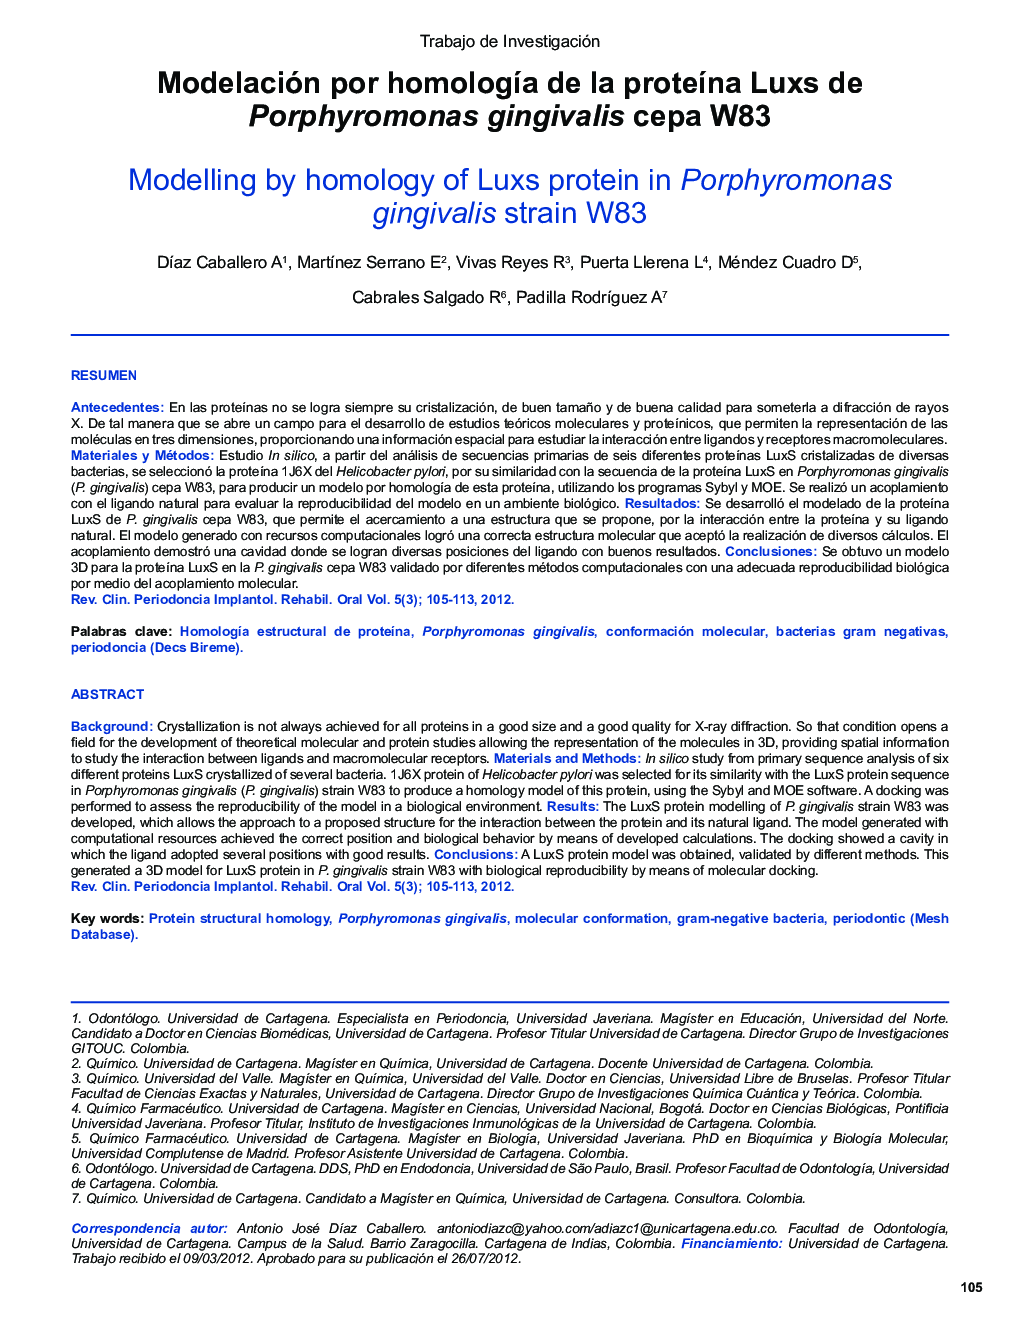 Modelación por homología de la proteína Luxs de Porphyromonas gingivalis cepa W83